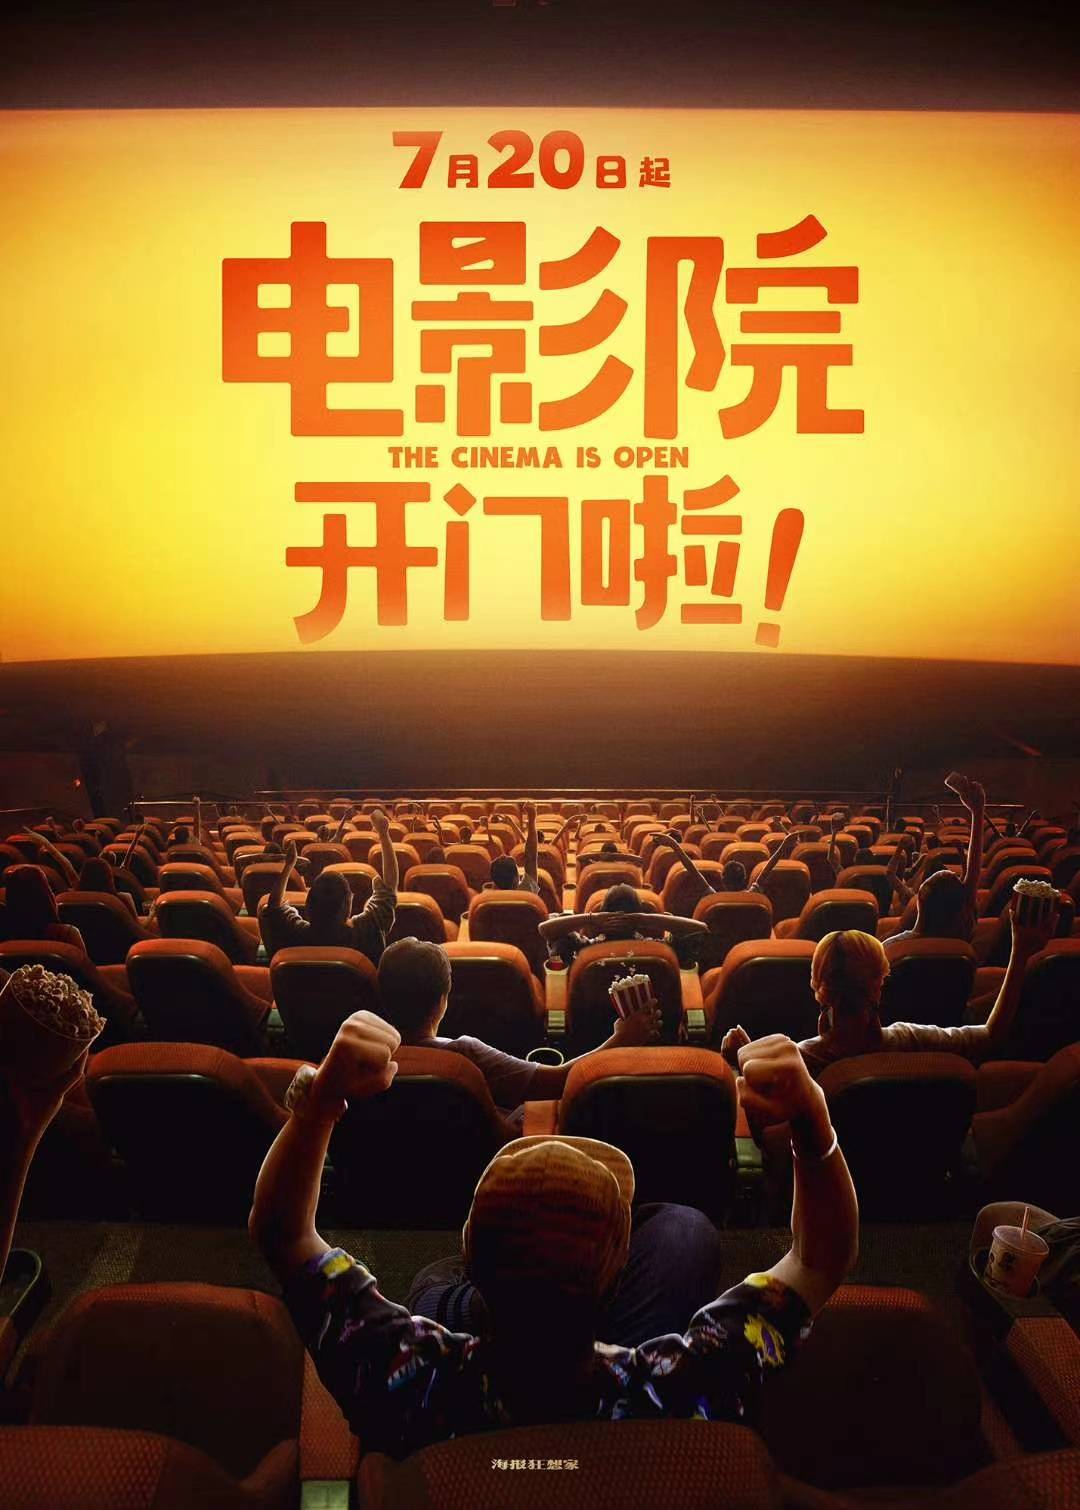 中国电影院上海国际电影节重启